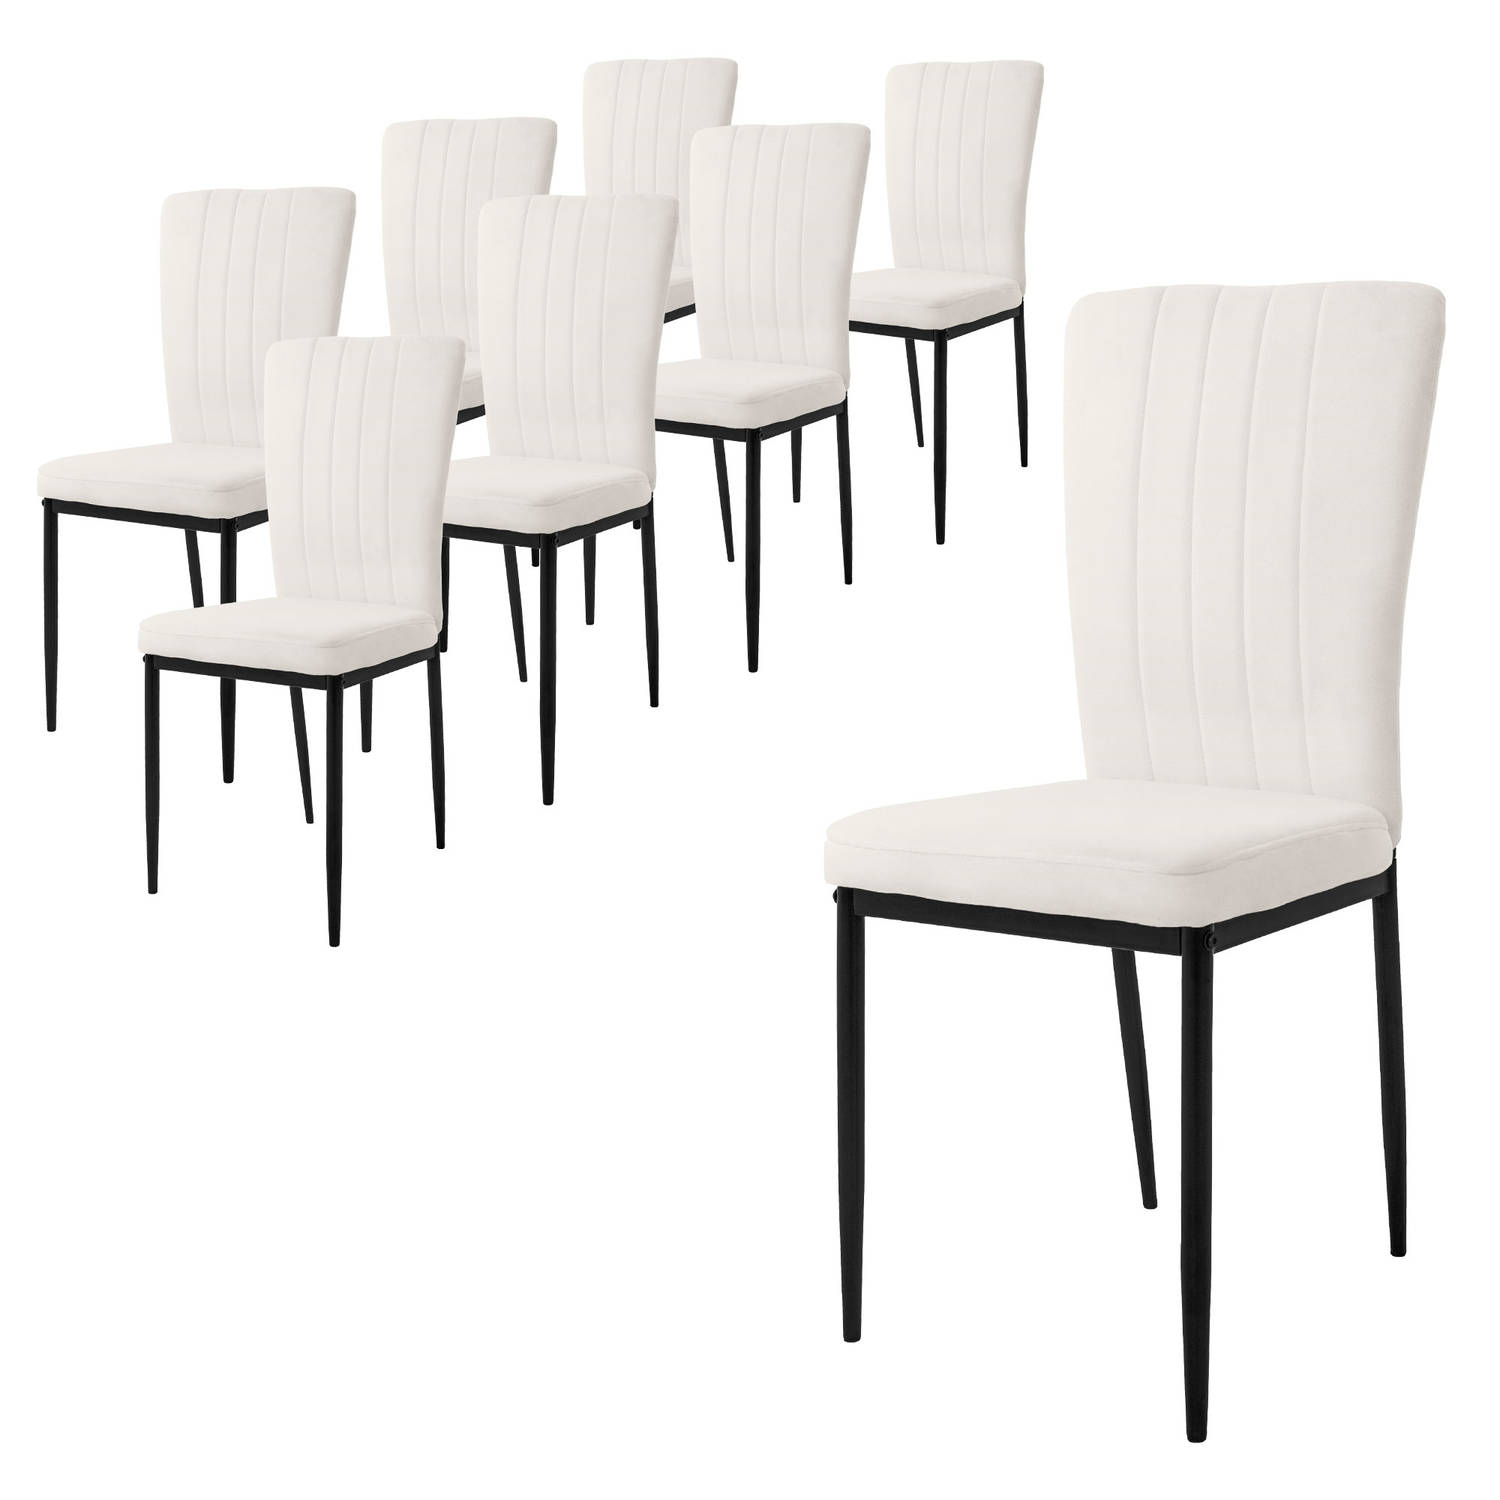 ML-Design eetkamerstoelen set van 8 met fluwelen bekleding, wit, keukenstoelen met rugleuning, gestoffeerde stoel met metalen poten, ergonomische eettafelstoel, moderne eetkamersto